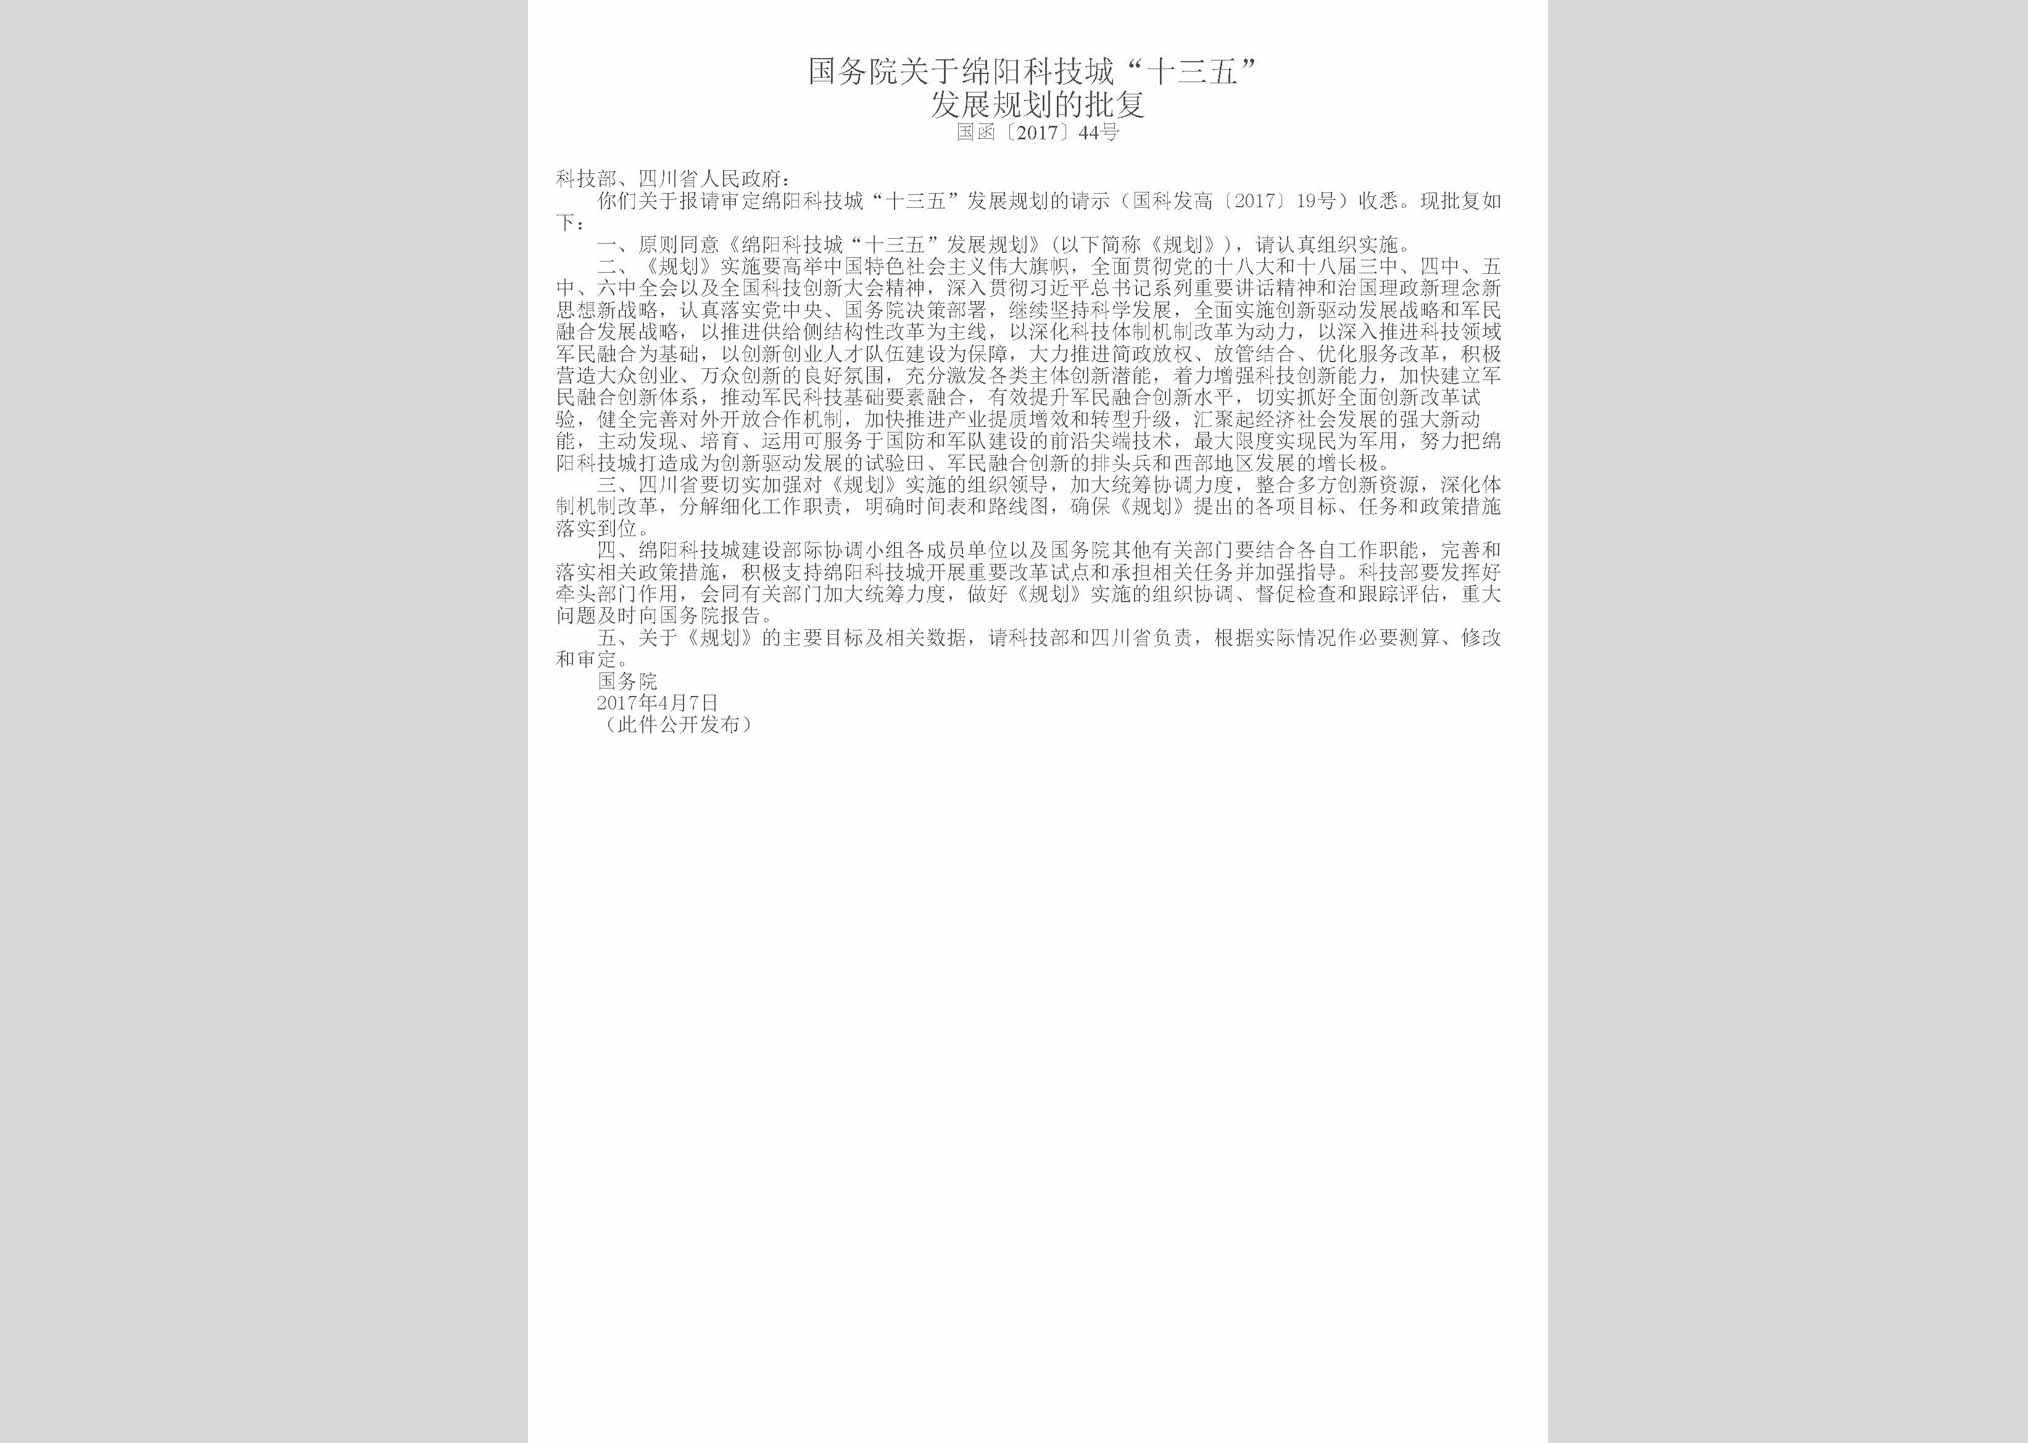 国函[2017]44号：国务院关于绵阳科技城“十三五”发展规划的批复